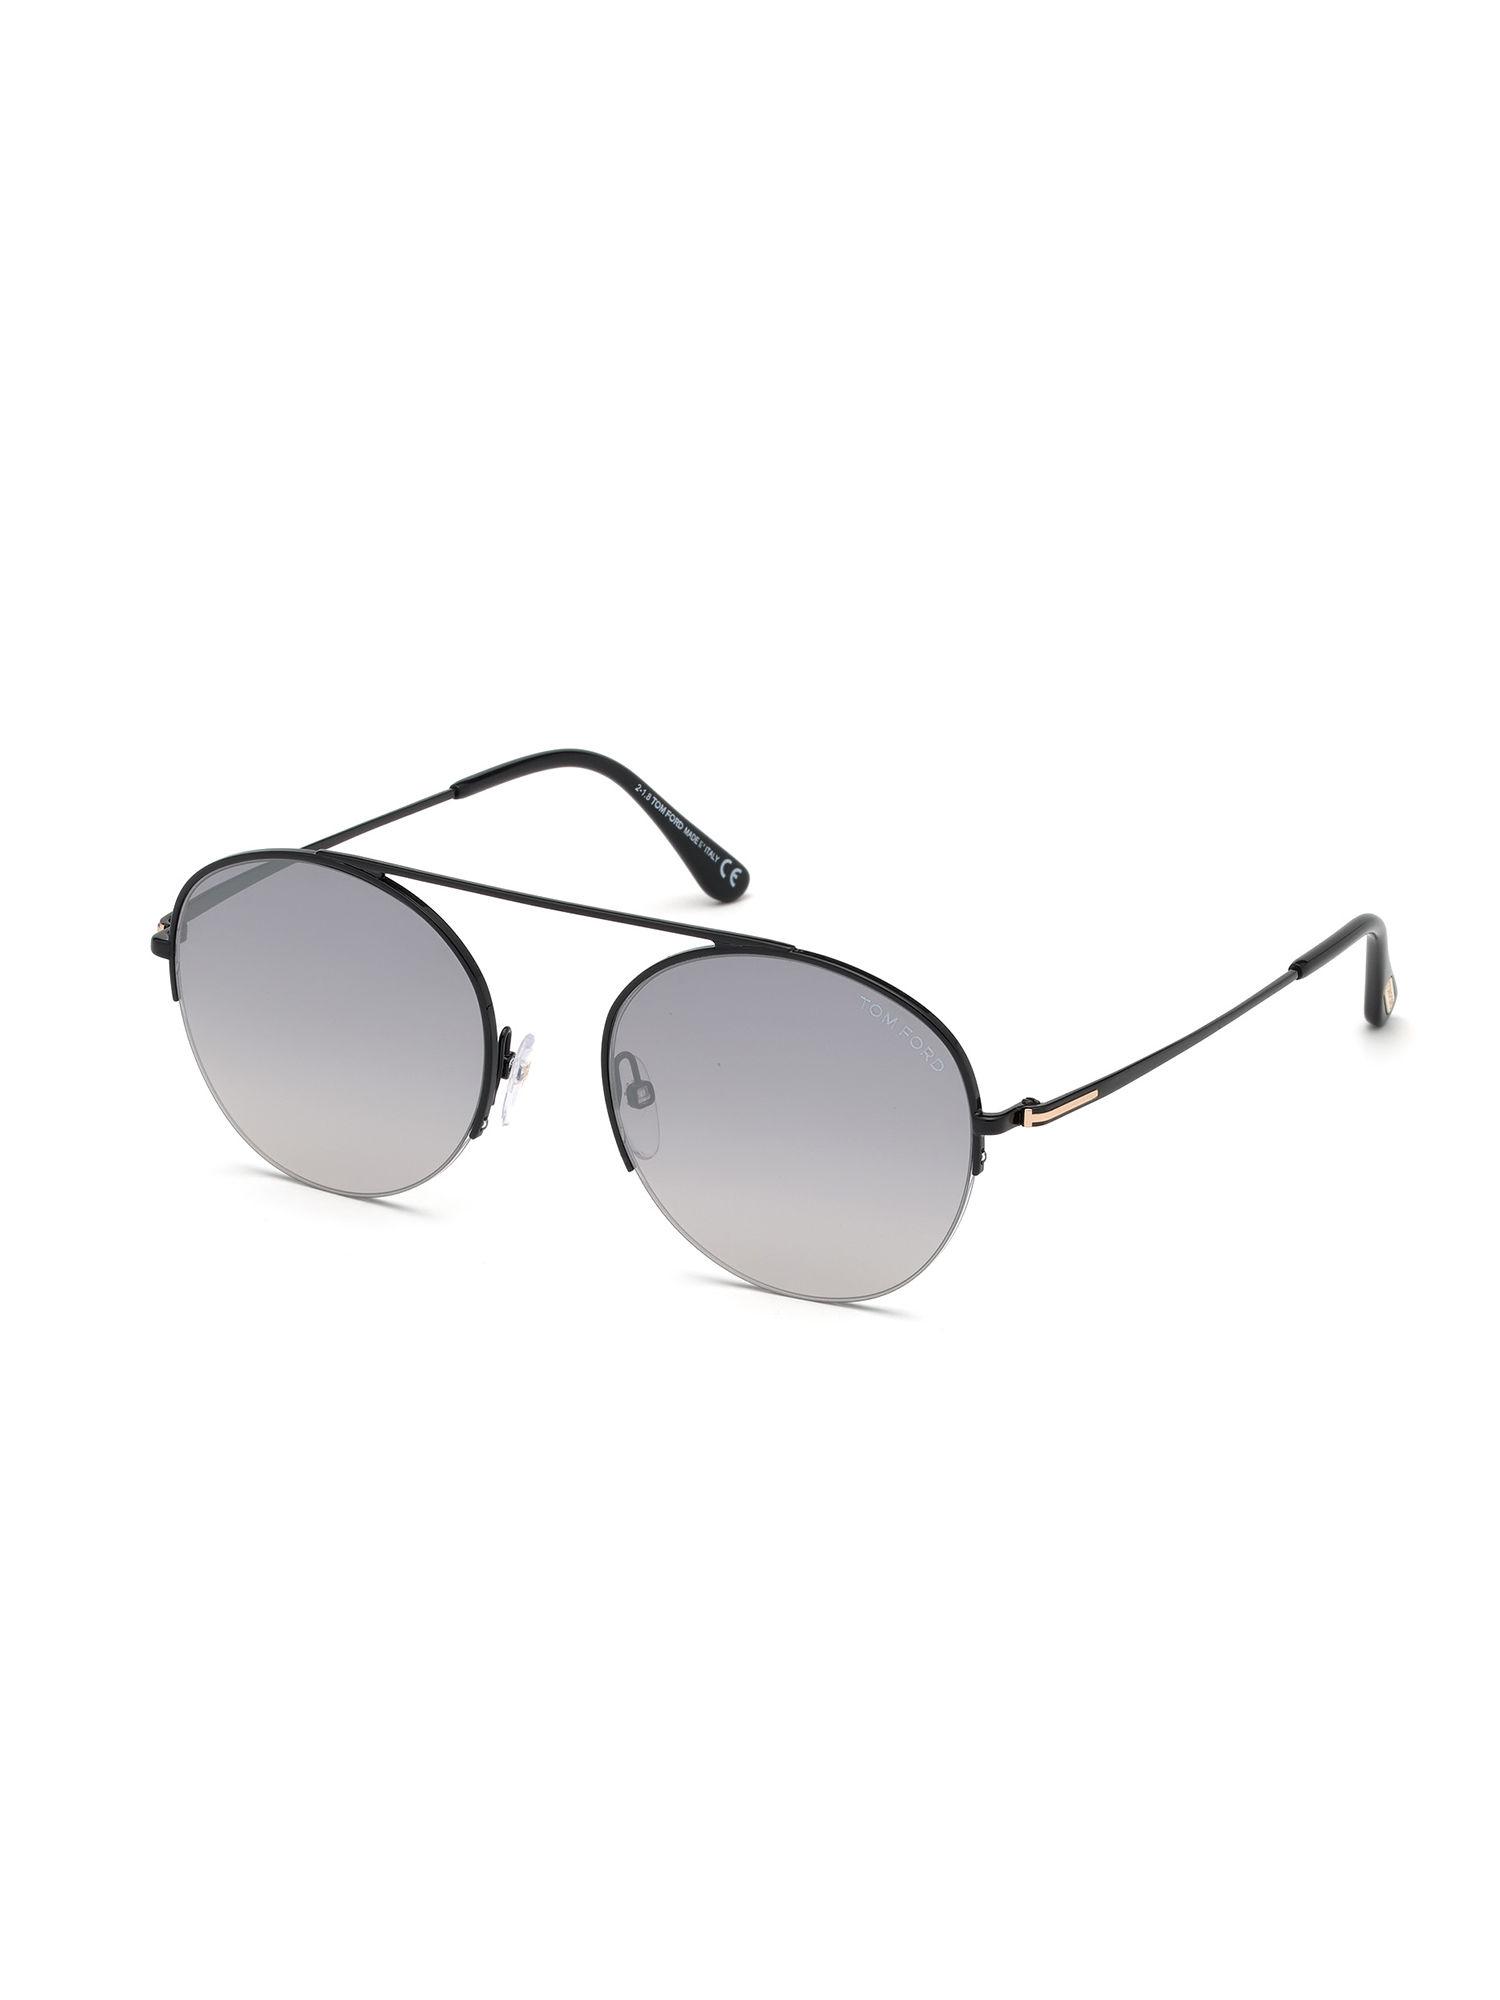 grey metal sunglasses